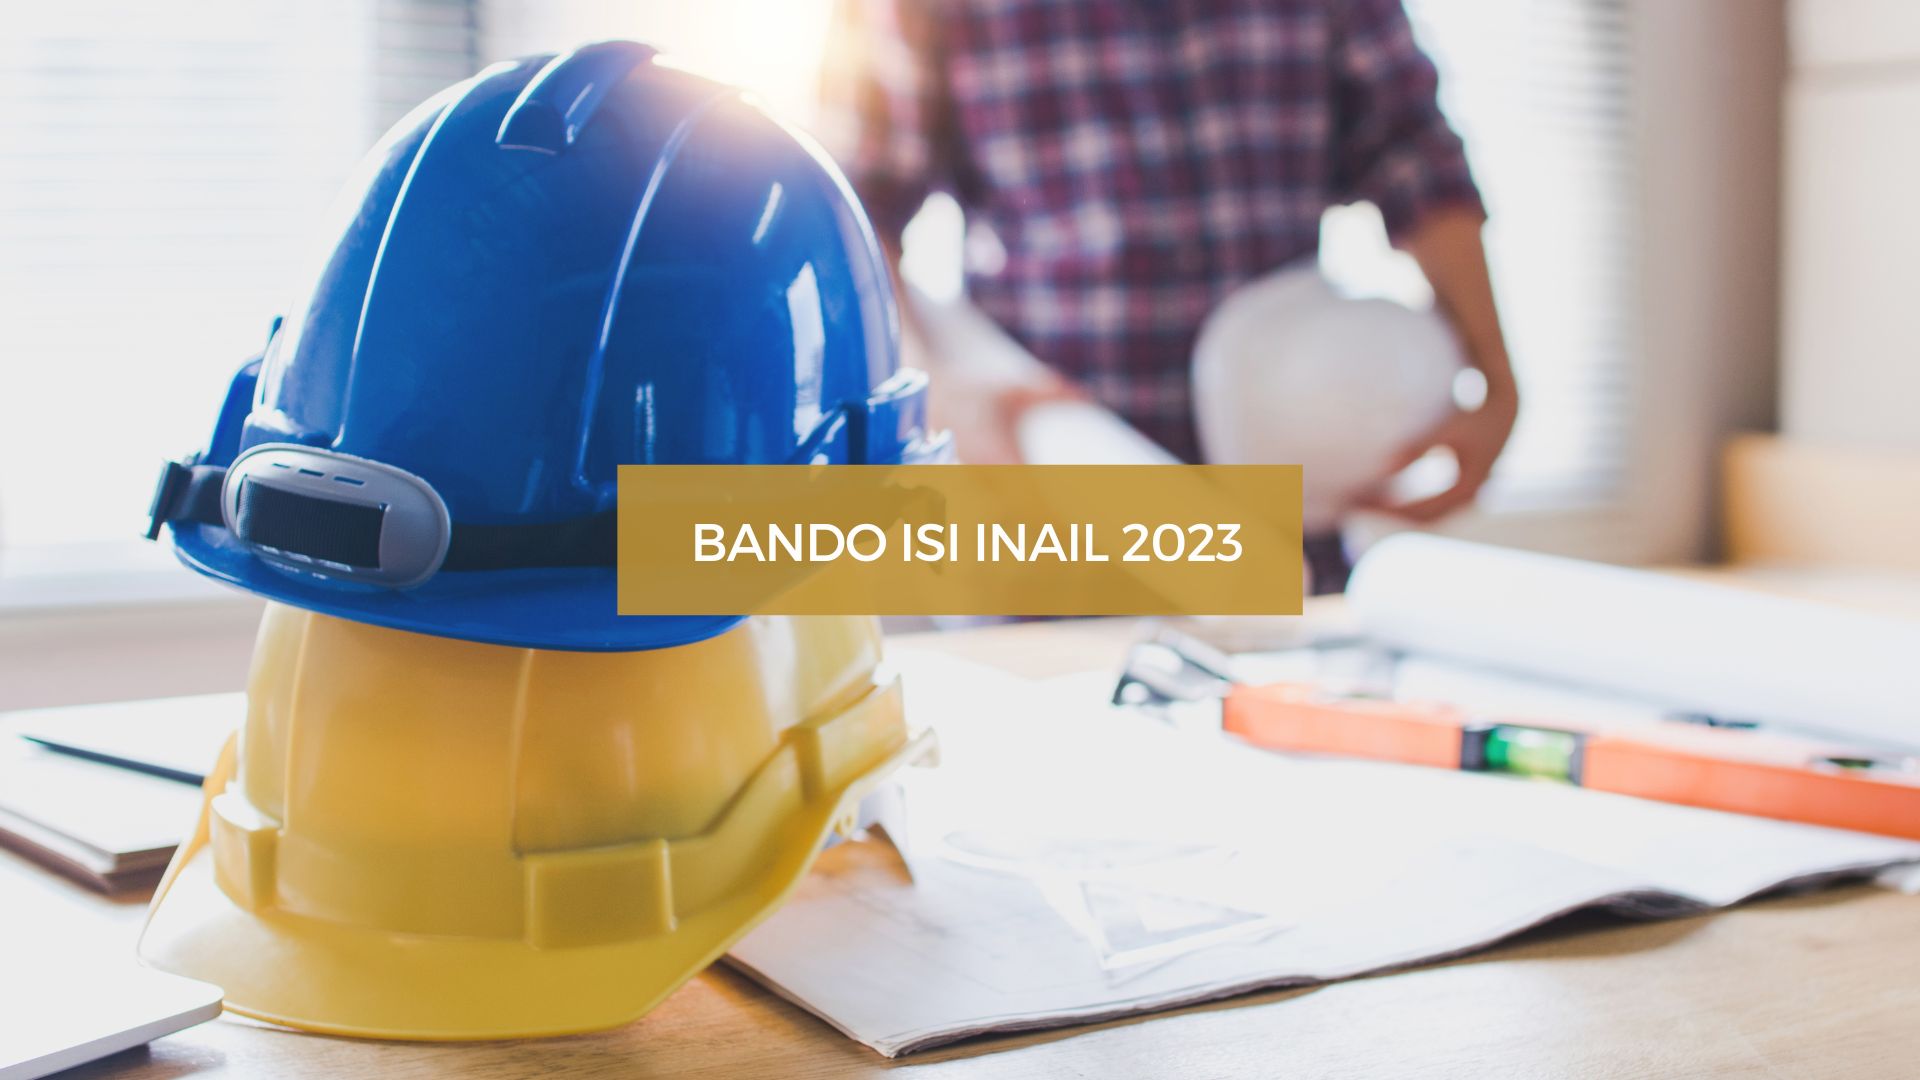 Bando INAIL 2023